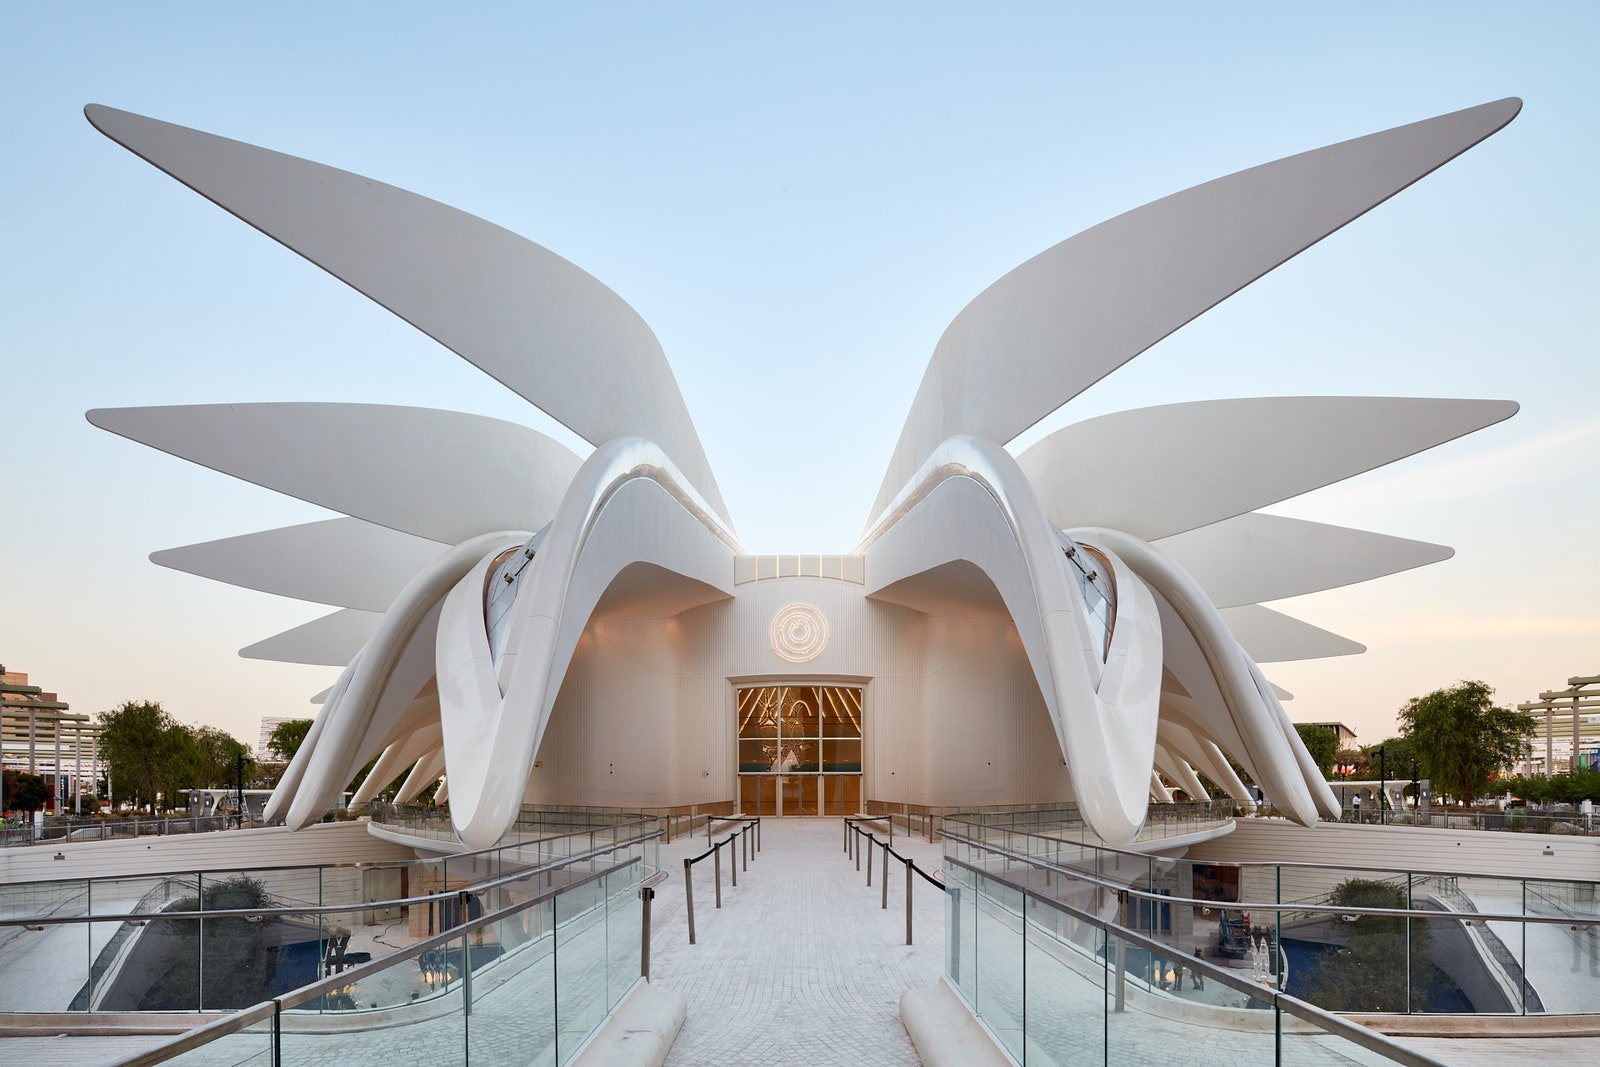 Павильон по проекту Сантьяго Калатравы на выставке Экспо2020 в Дубае